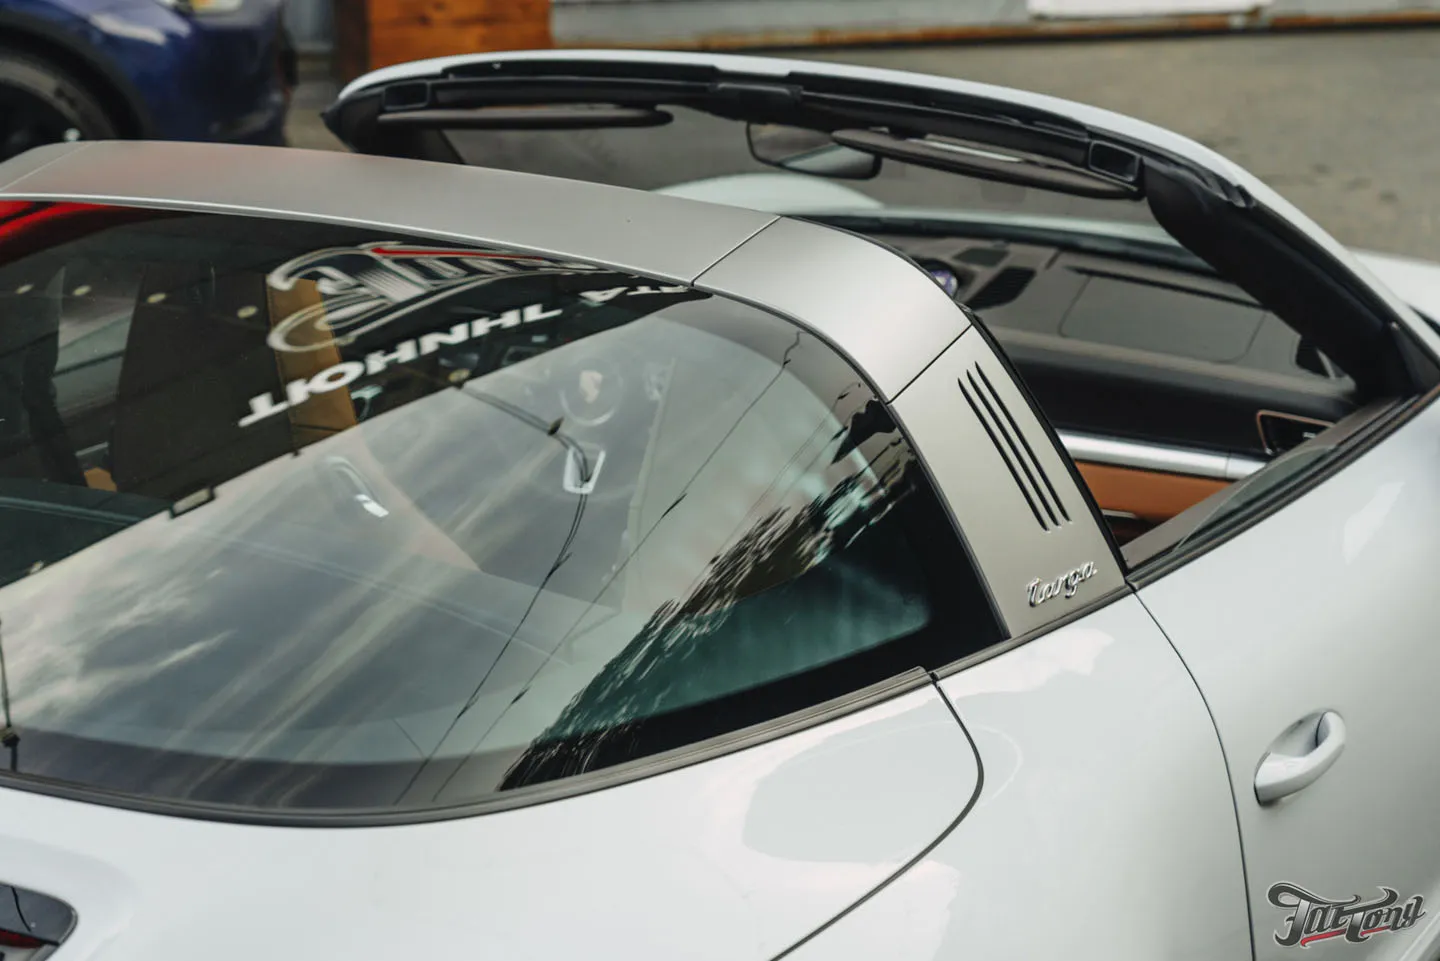 Как мы это делаем?! Полный комплекс детейлинг-услуг для Porsche 911 Targa 4S, окрас дисков и фирменный шиномонтаж